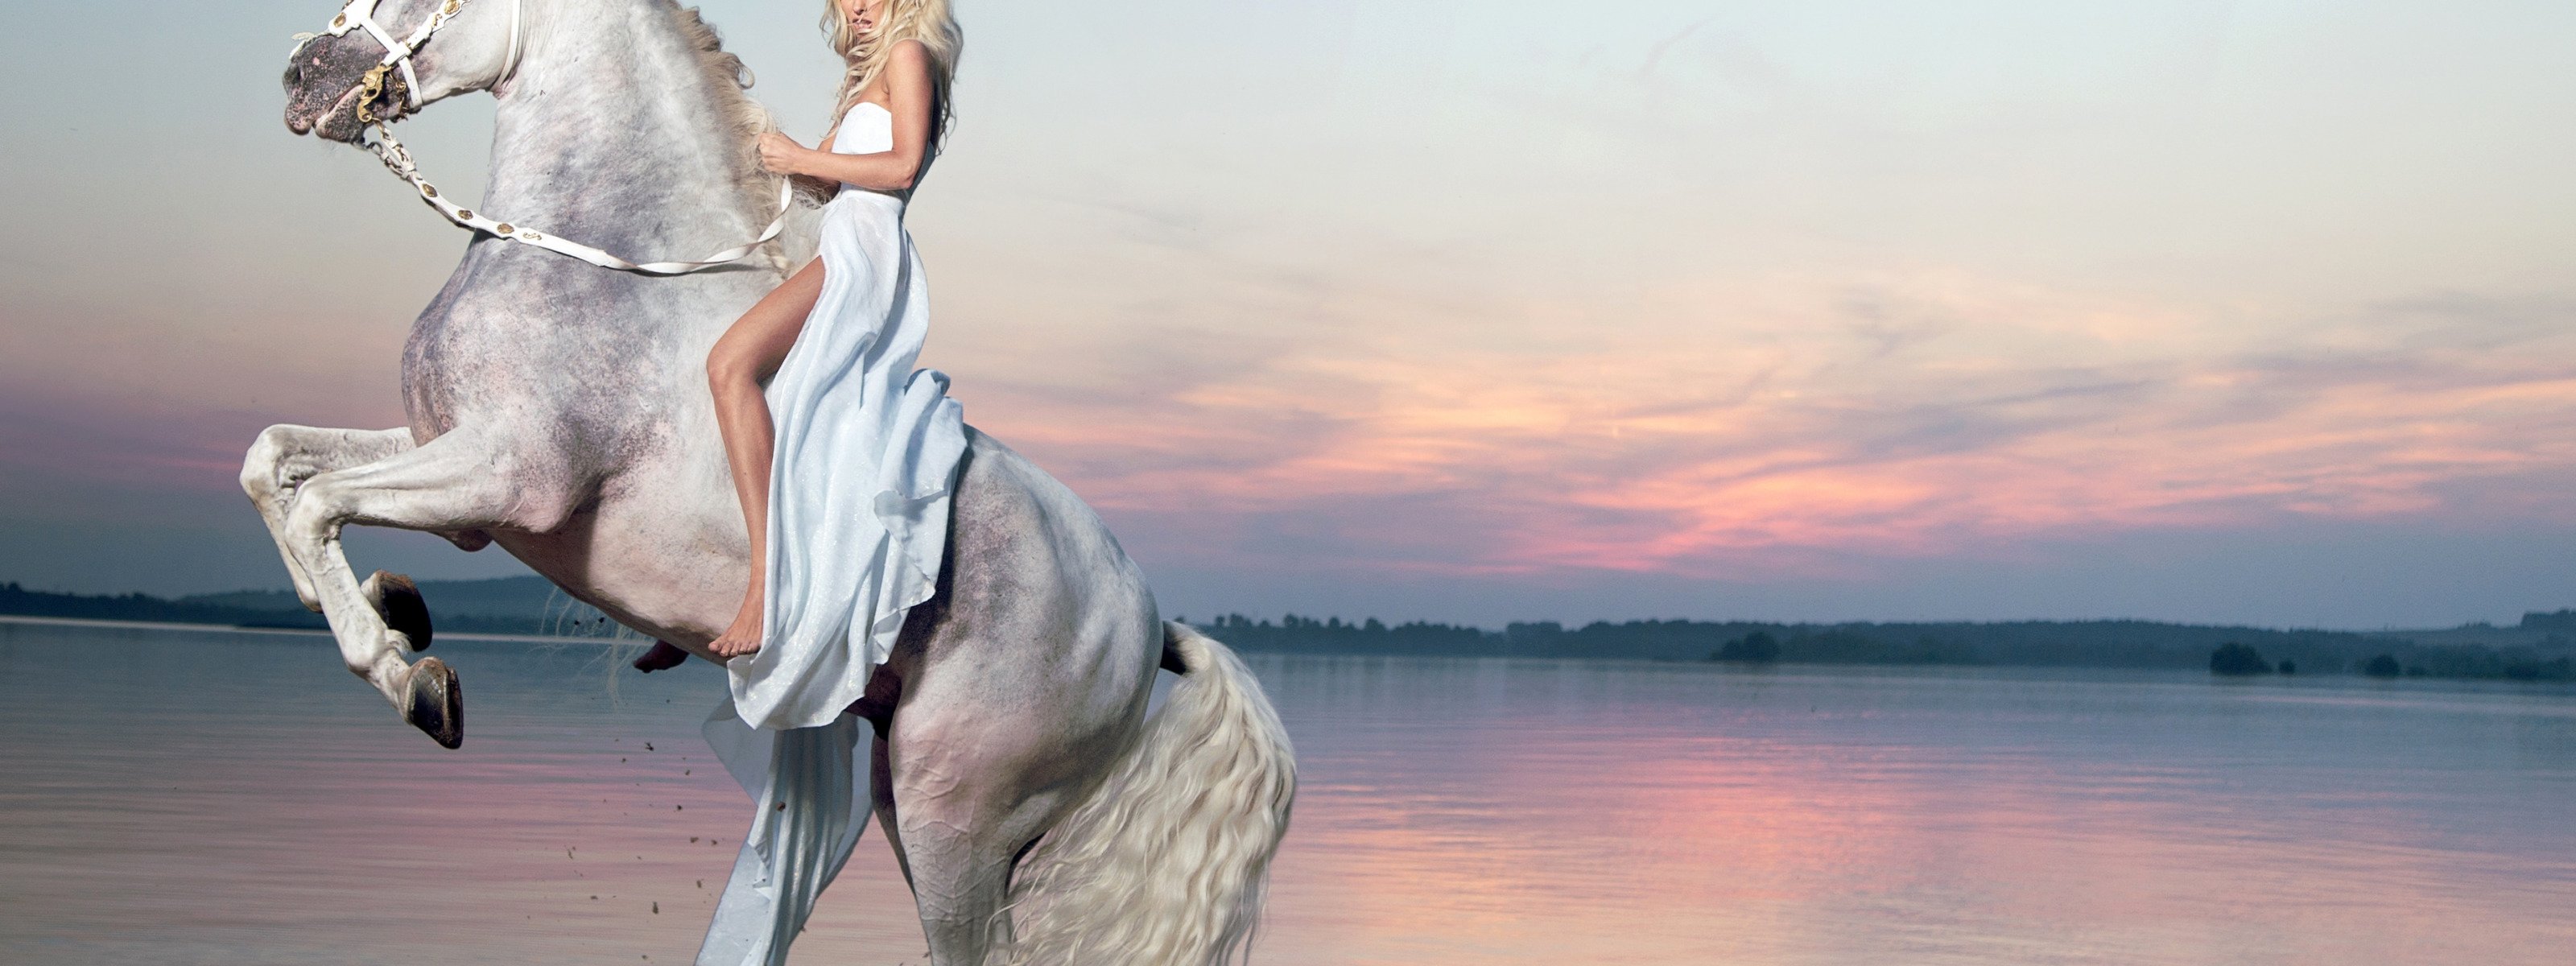 Реклама лошадок. Блондинка на лошади. Девушка блондинка на коне. Лошади на заставку. Девушка у моря на лошади блондинка.